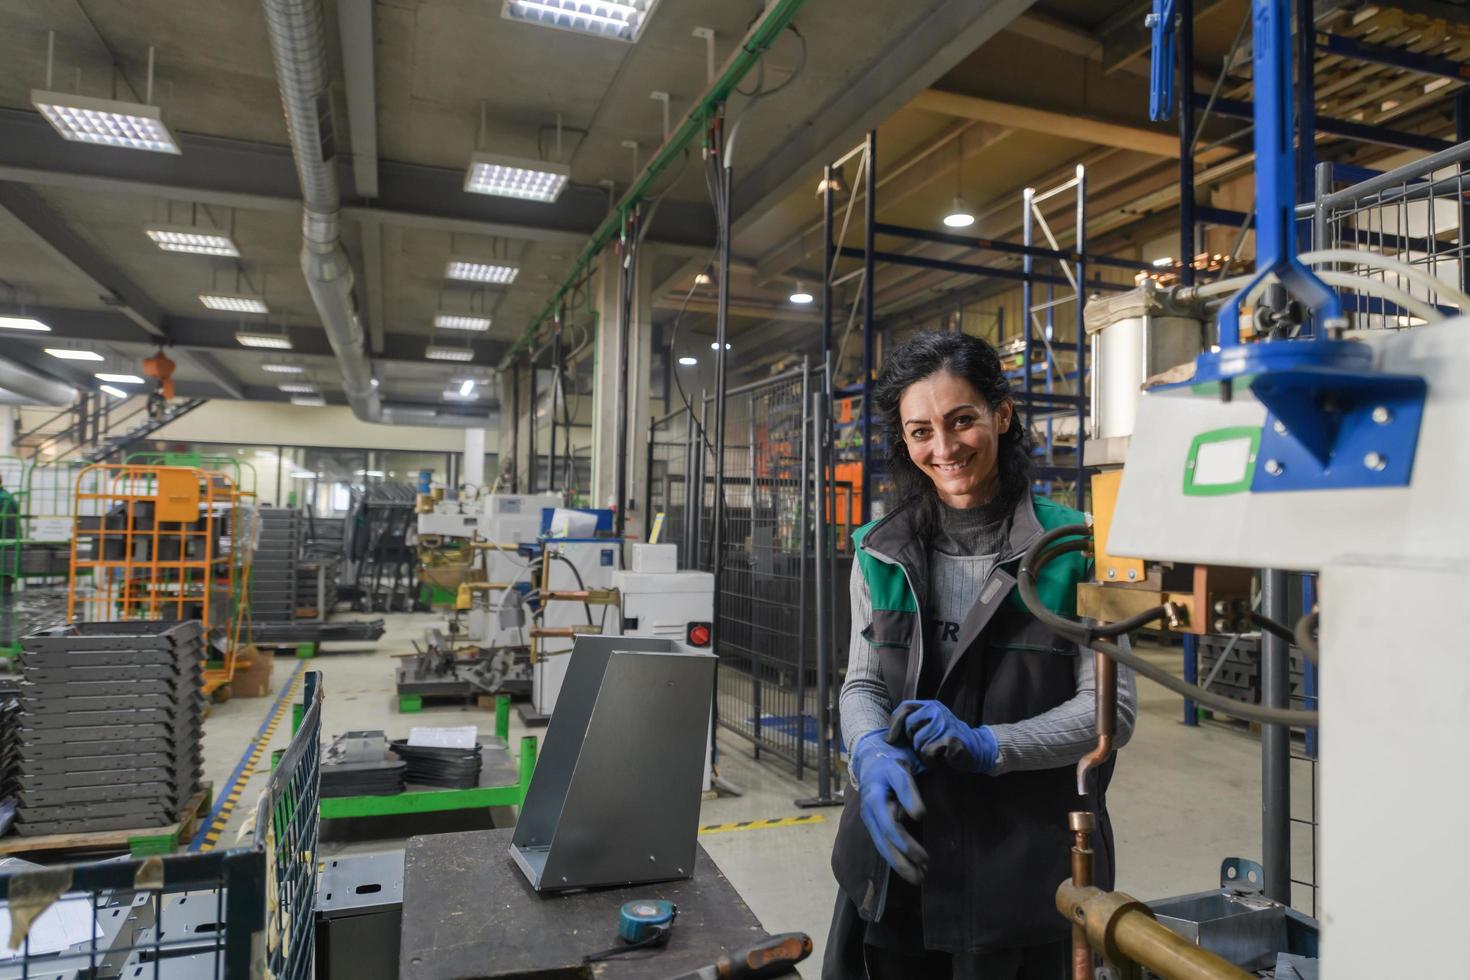 Turquie, 2022 - une femme travaillant dans une usine métallurgique moderne assemble des pièces pour une nouvelle machine photo